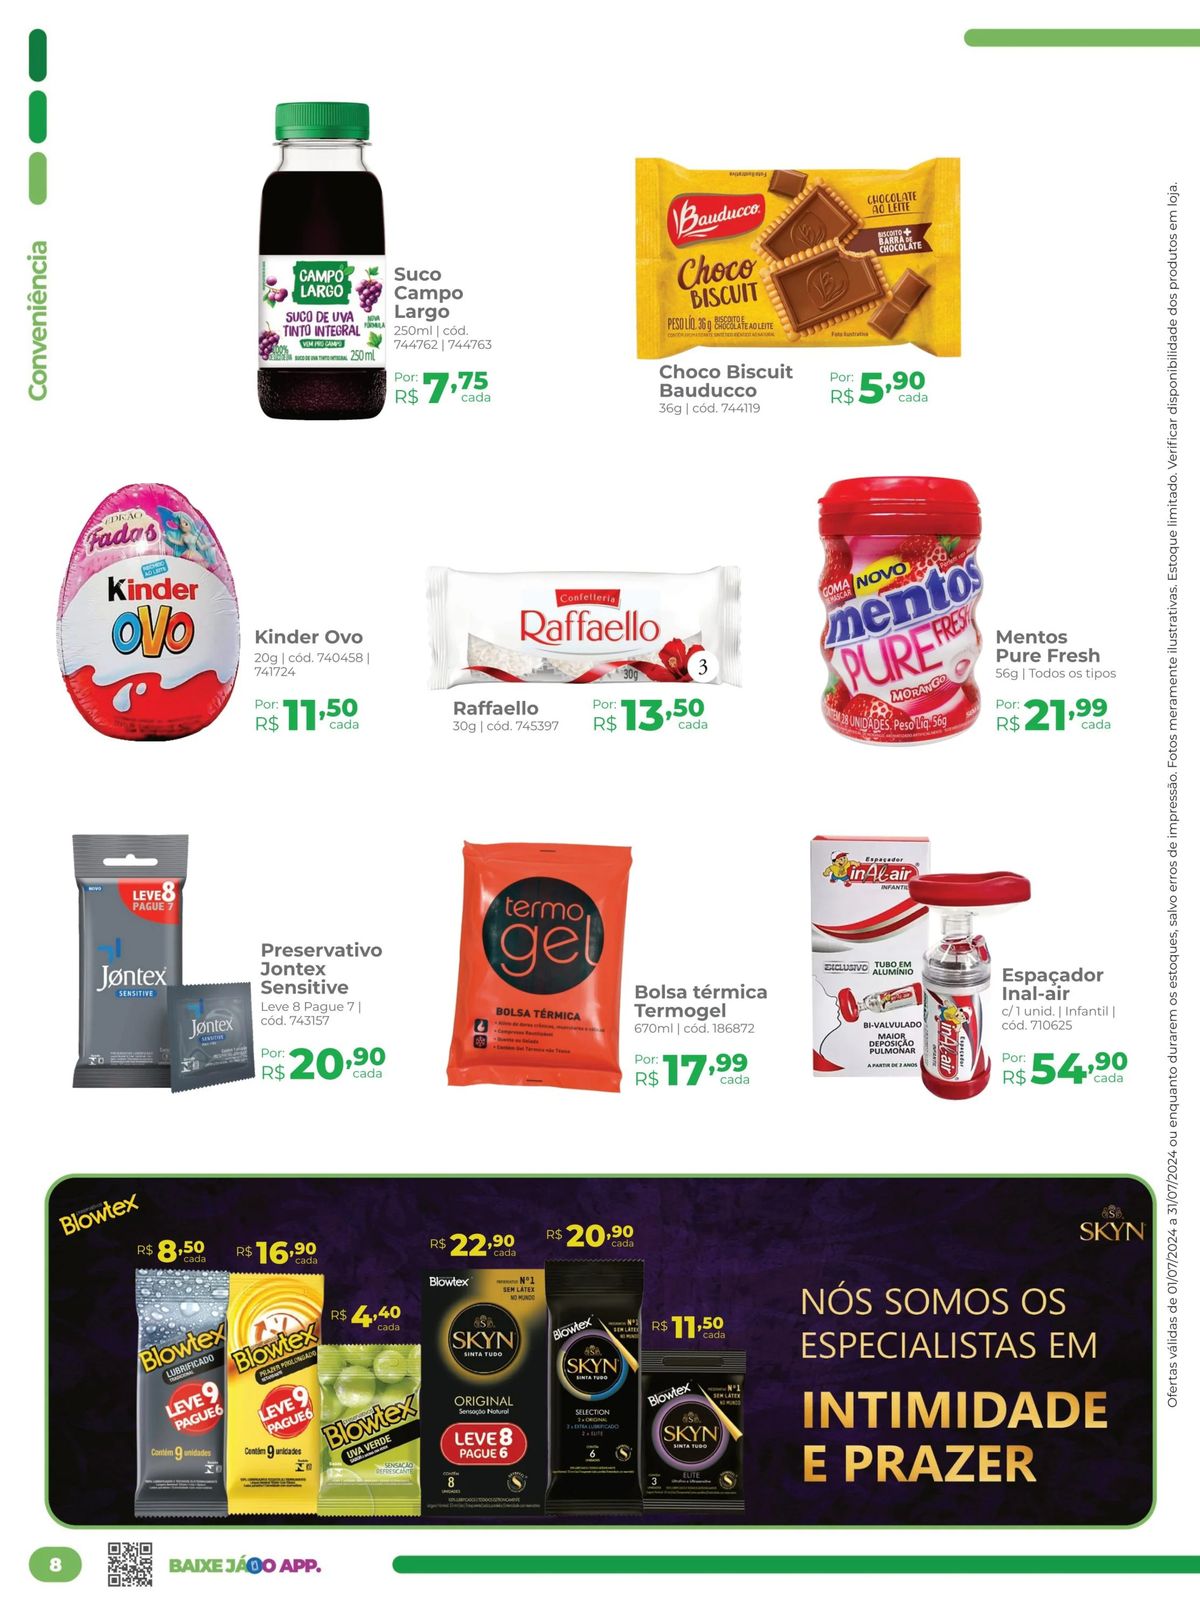 Promoção de Chocolates e Balas na Farmácia Preço Popular